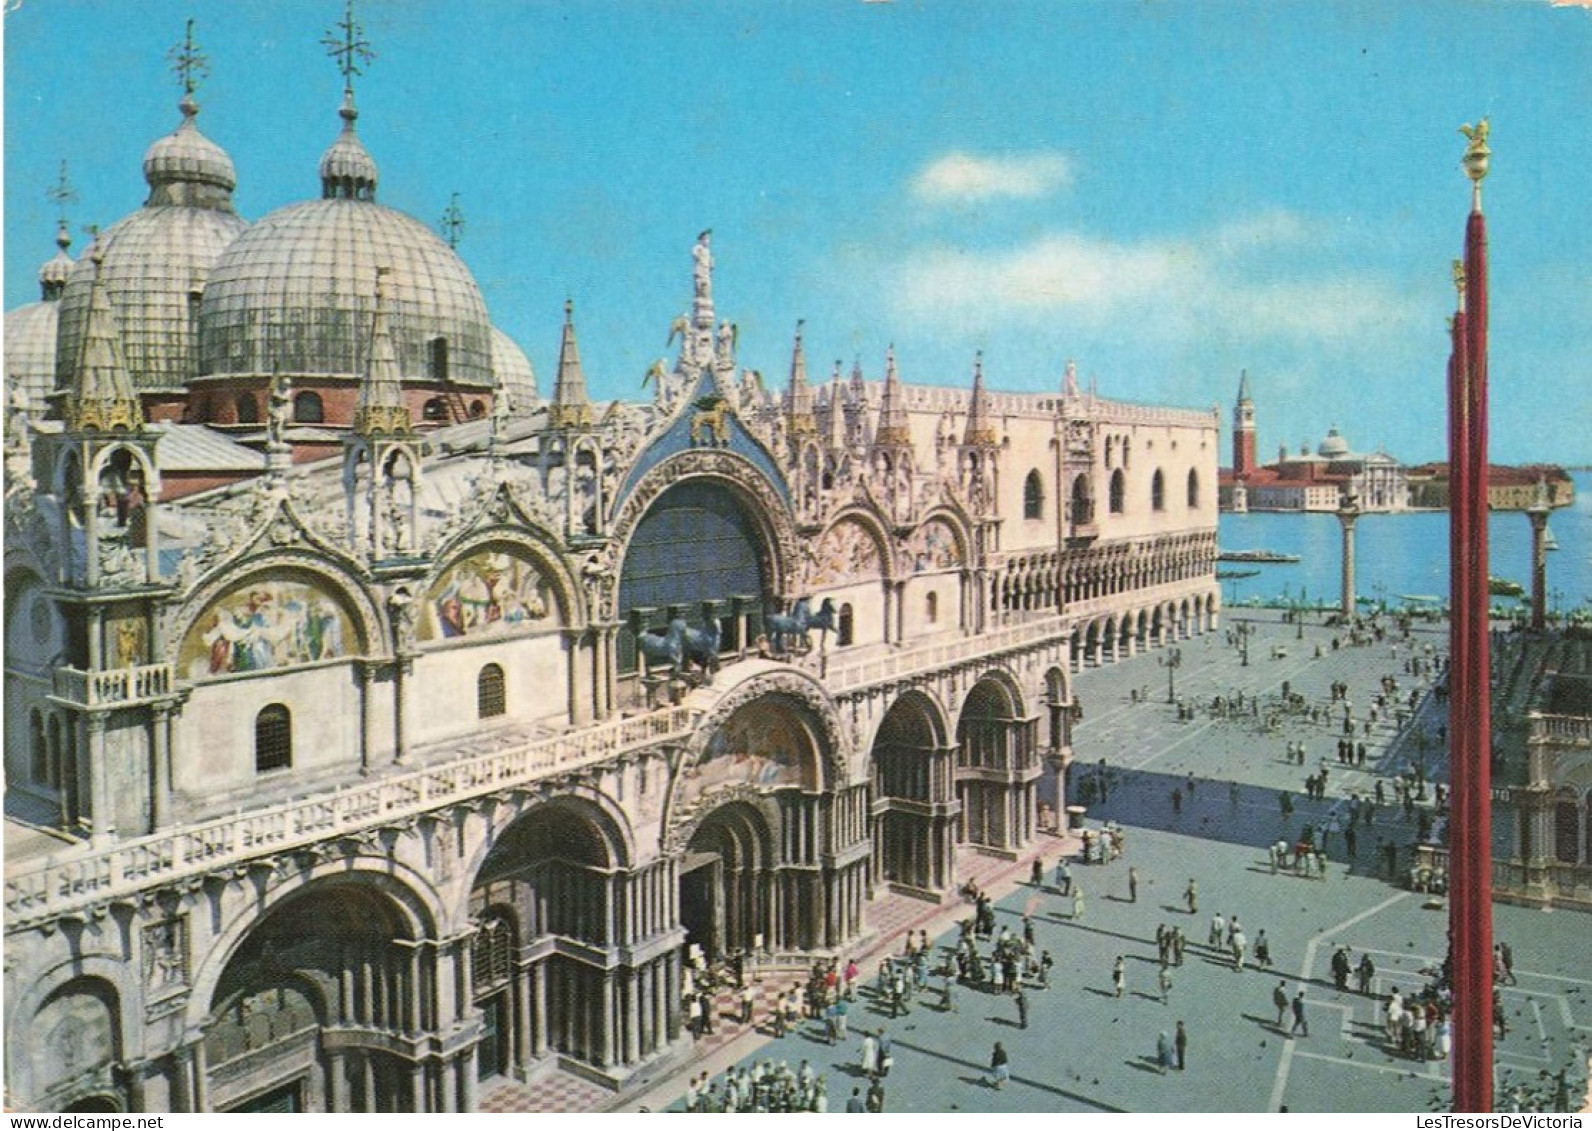 ITALIE - Venezia - Vue Sur La Basilique Et Petite Place St Marc - Vue Panoramique - Animé - Carte Postale Ancienne - Venezia (Venice)